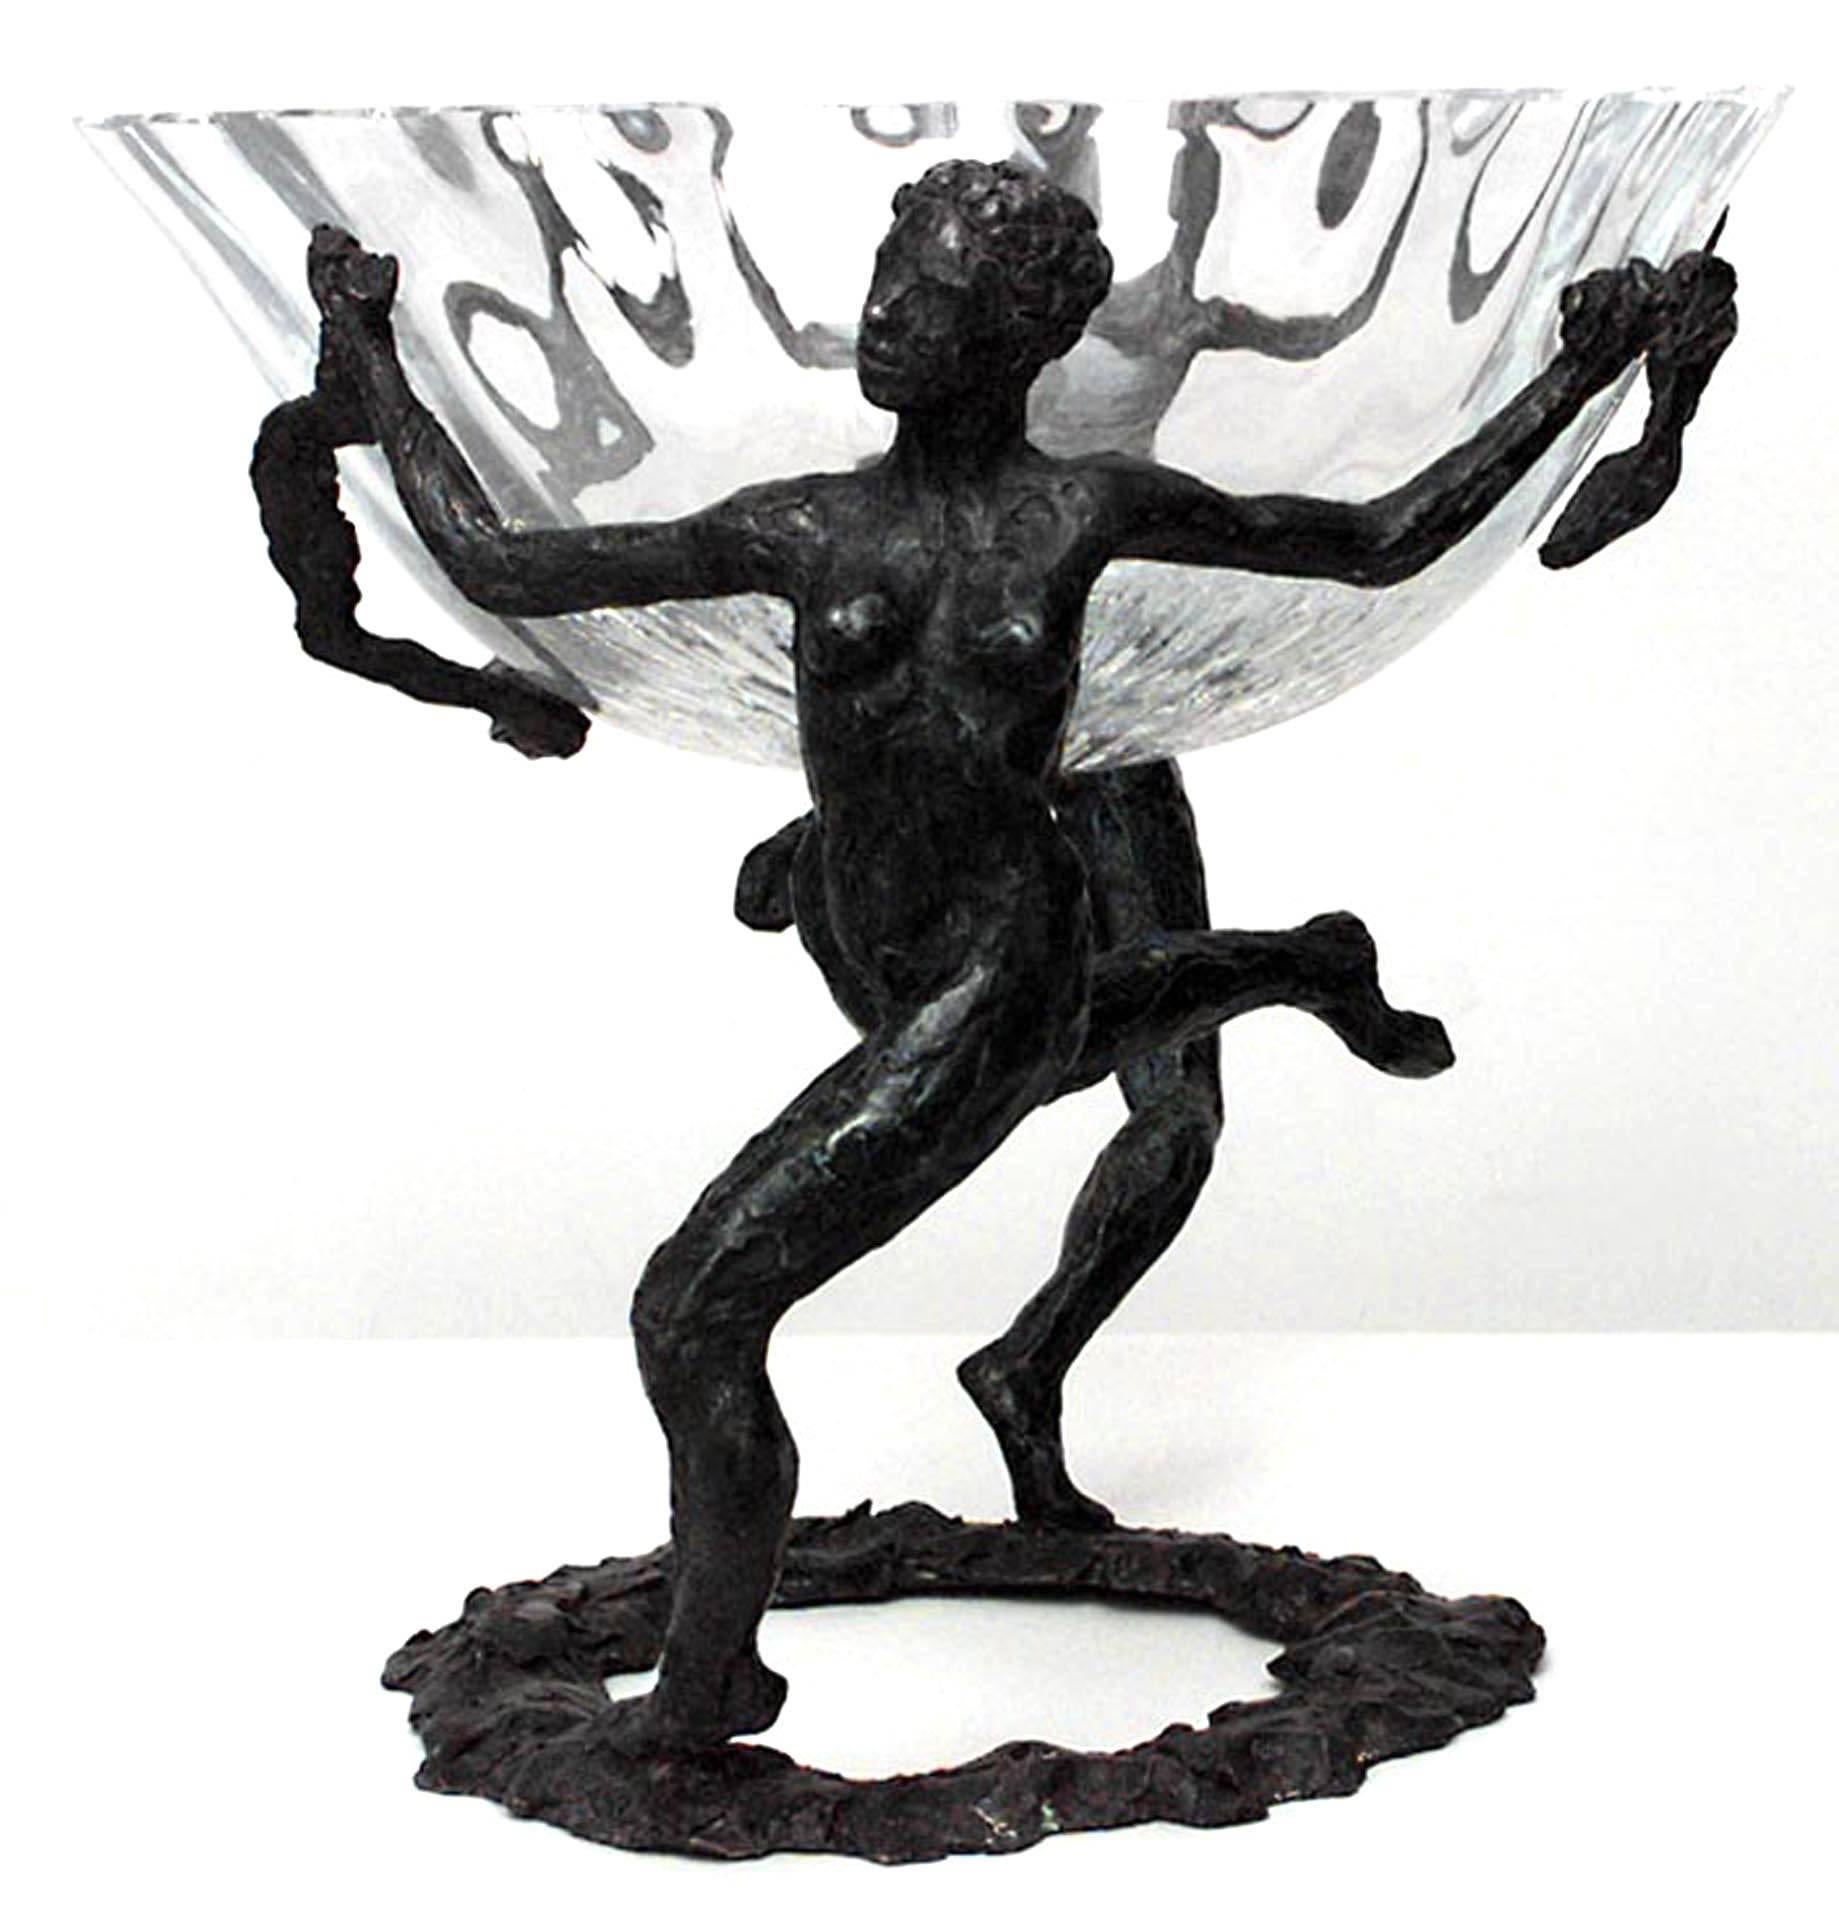 Centre de table en bronze de style Art Moderne français avec 2 figures féminines tenant une coupe en cristal taillé (signé LaROCHE)
